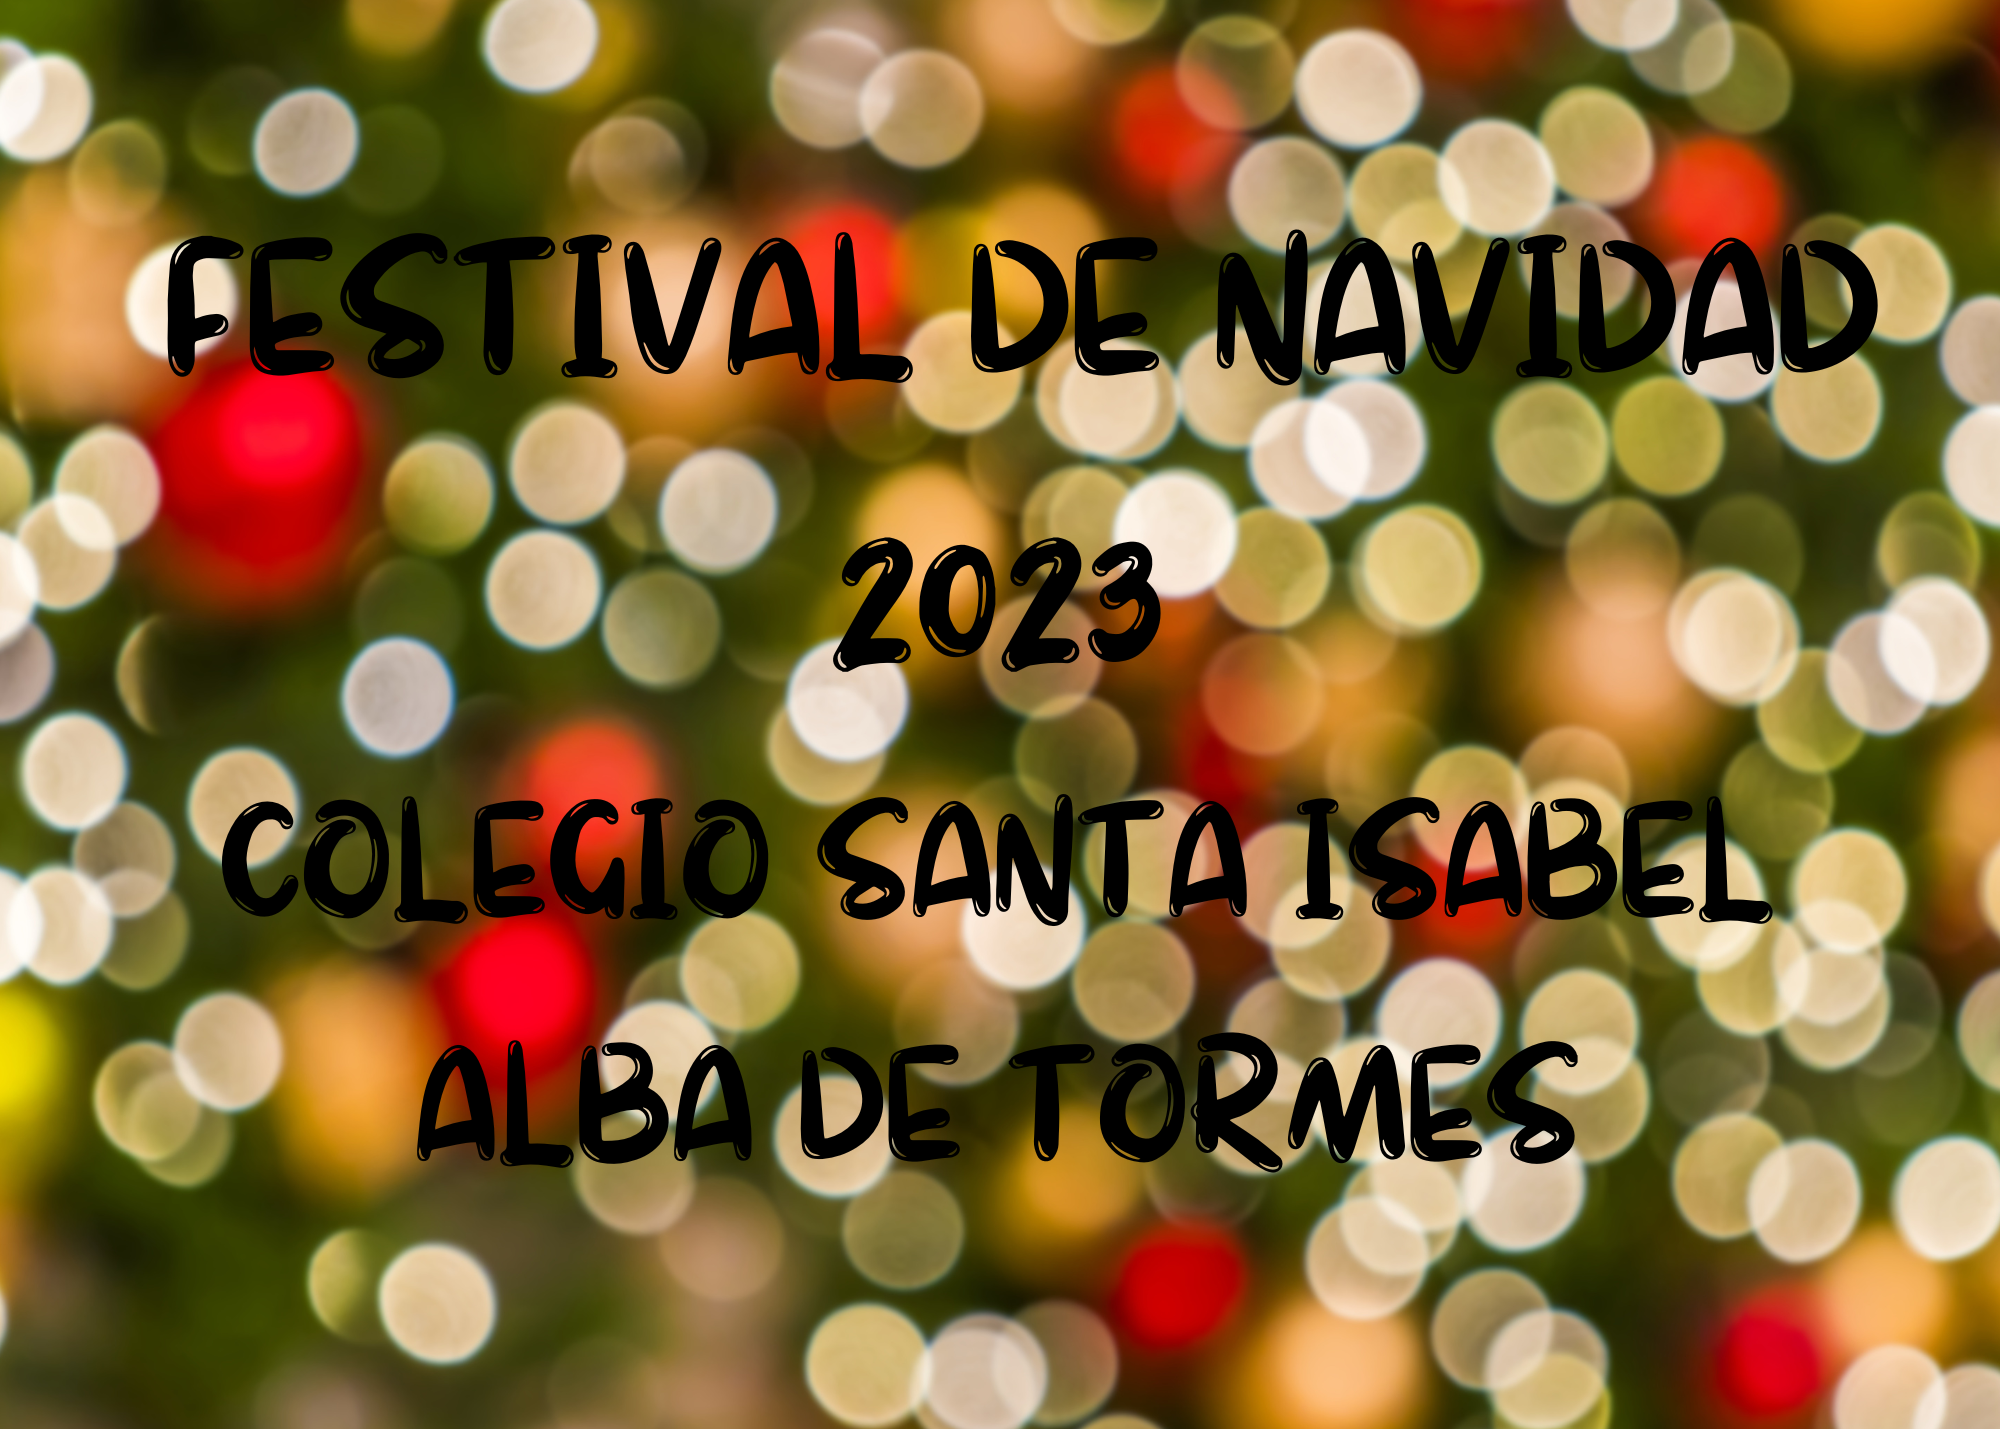 FESTIVAL DE NAVIDAD 2023